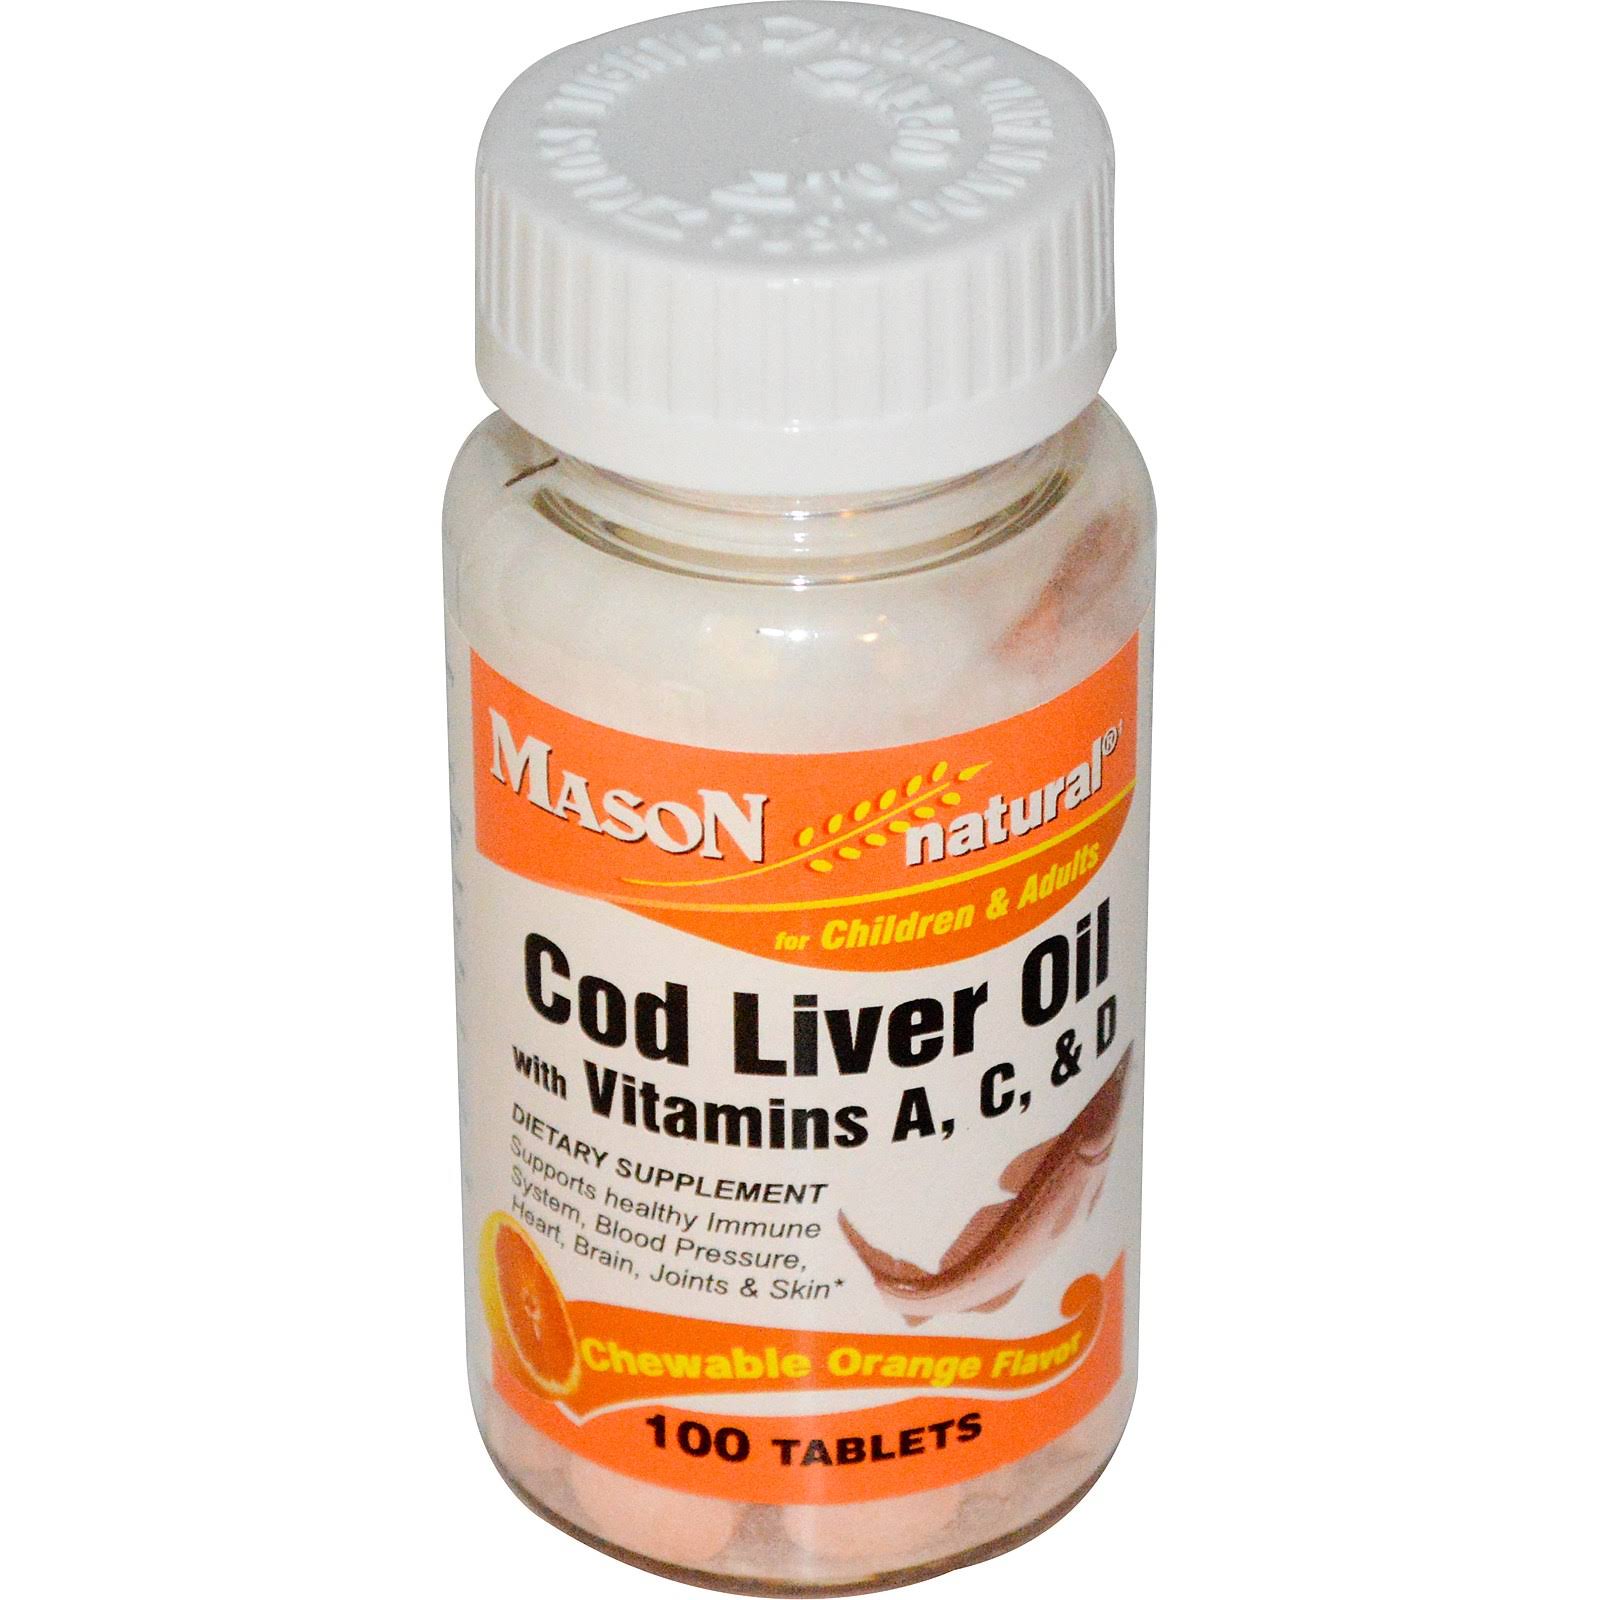 Mason Natural Cod Liver Oil Chewable Tablets - Orange, 100 Tablets